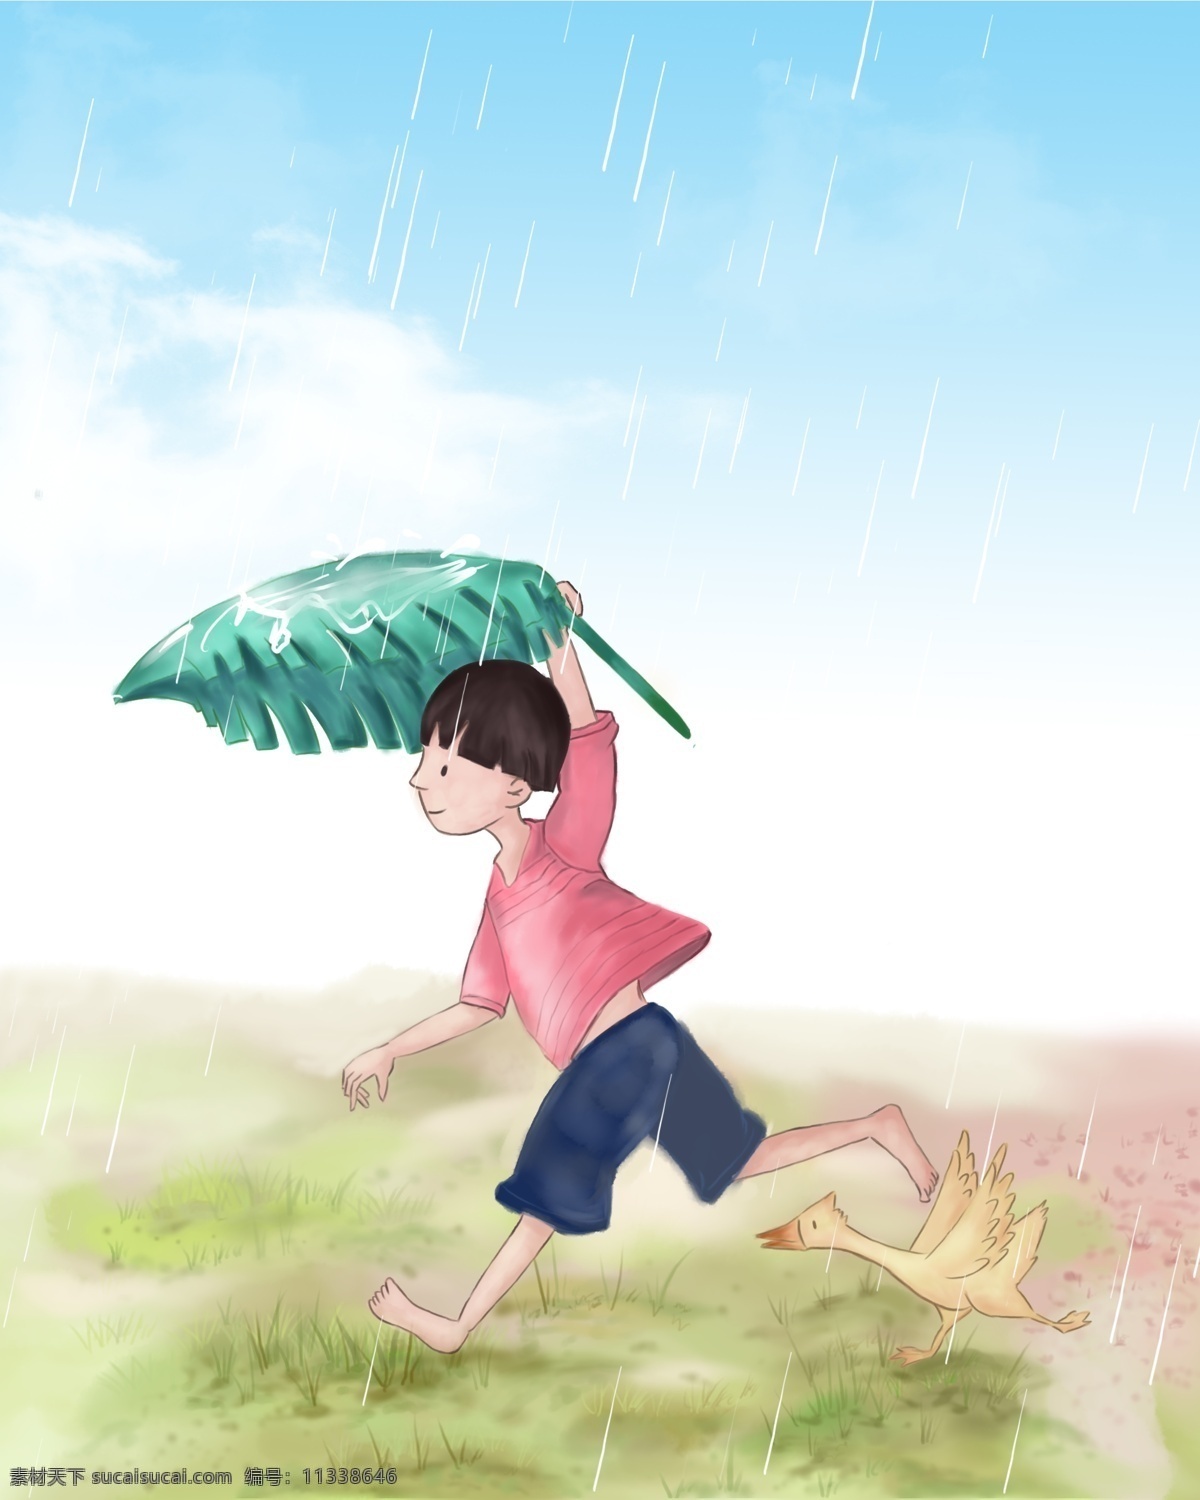 夏季 雨 中 奔跑 小 男孩 背景 雨中 奔跑的小男孩 雨中男孩 雨水 大雨 阵雨 夏天